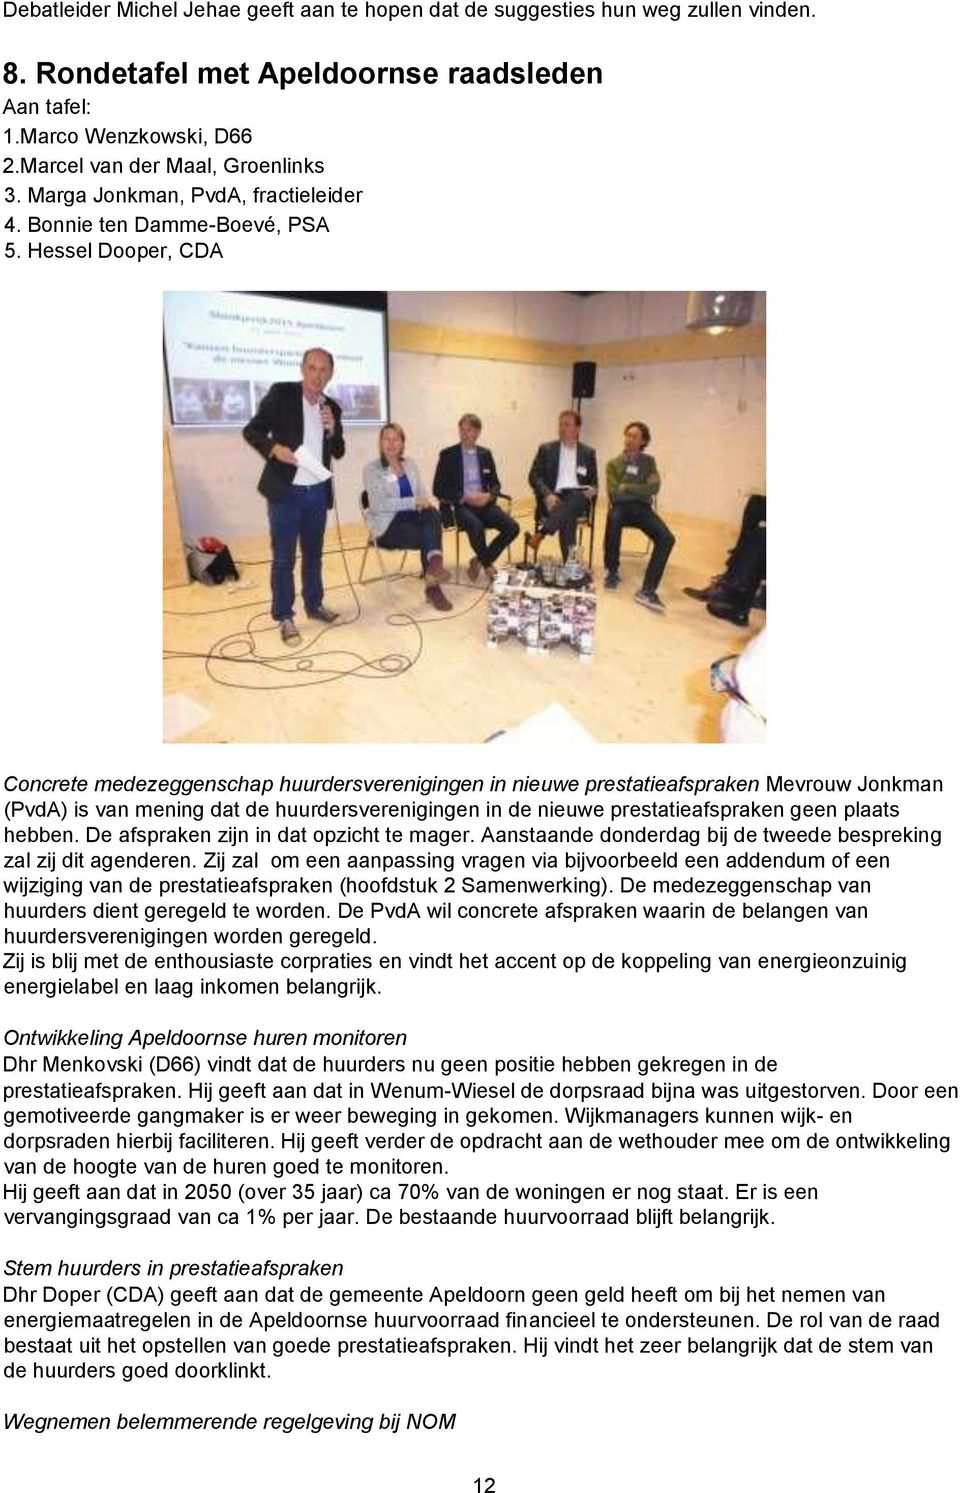 Hessel Dooper, CDA Concrete medezeggenschap huurdersverenigingen in nieuwe prestatieafspraken Mevrouw Jonkman (PvdA) is van mening dat de huurdersverenigingen in de nieuwe prestatieafspraken geen